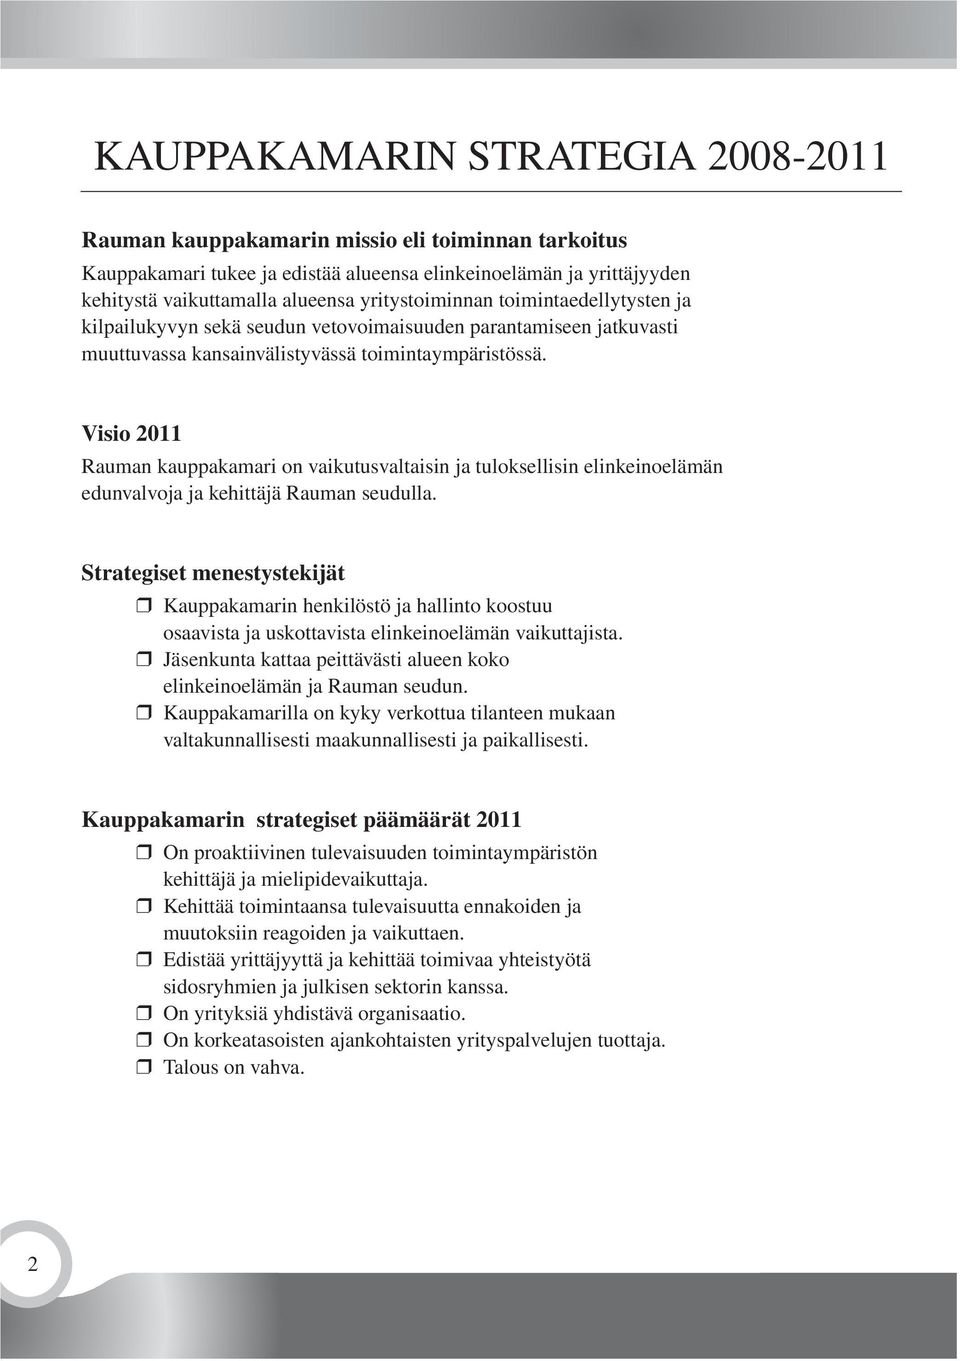 Visio 2011 Rauman kauppakamari on vaikutusvaltaisin ja tuloksellisin elinkeinoelämän edunvalvoja ja kehittäjä Rauman seudulla.